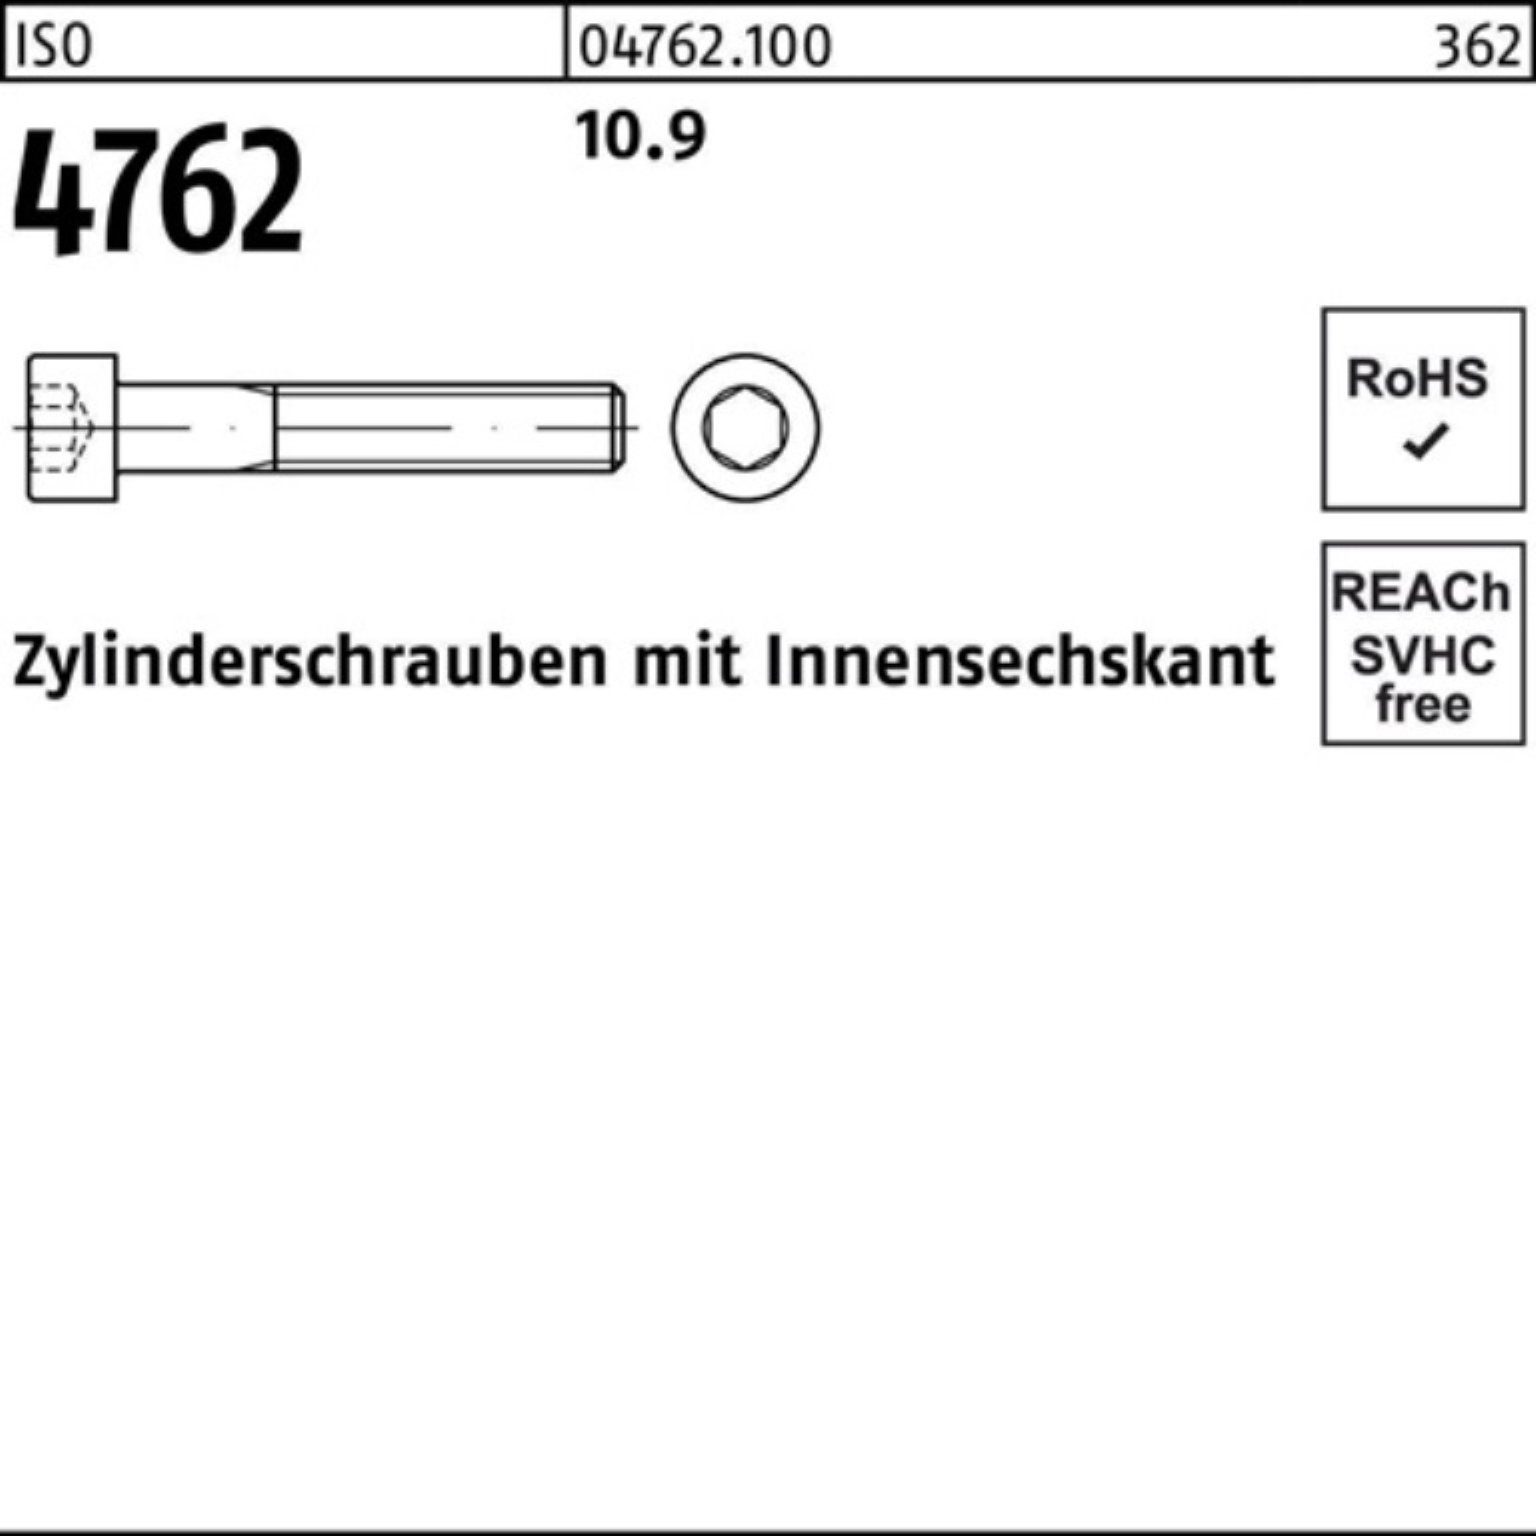 75 Zylinderschraube 4762 Reyher ISO I Stück 1 100er Innen-6kt Zylinderschraube M36x 10.9 Pack